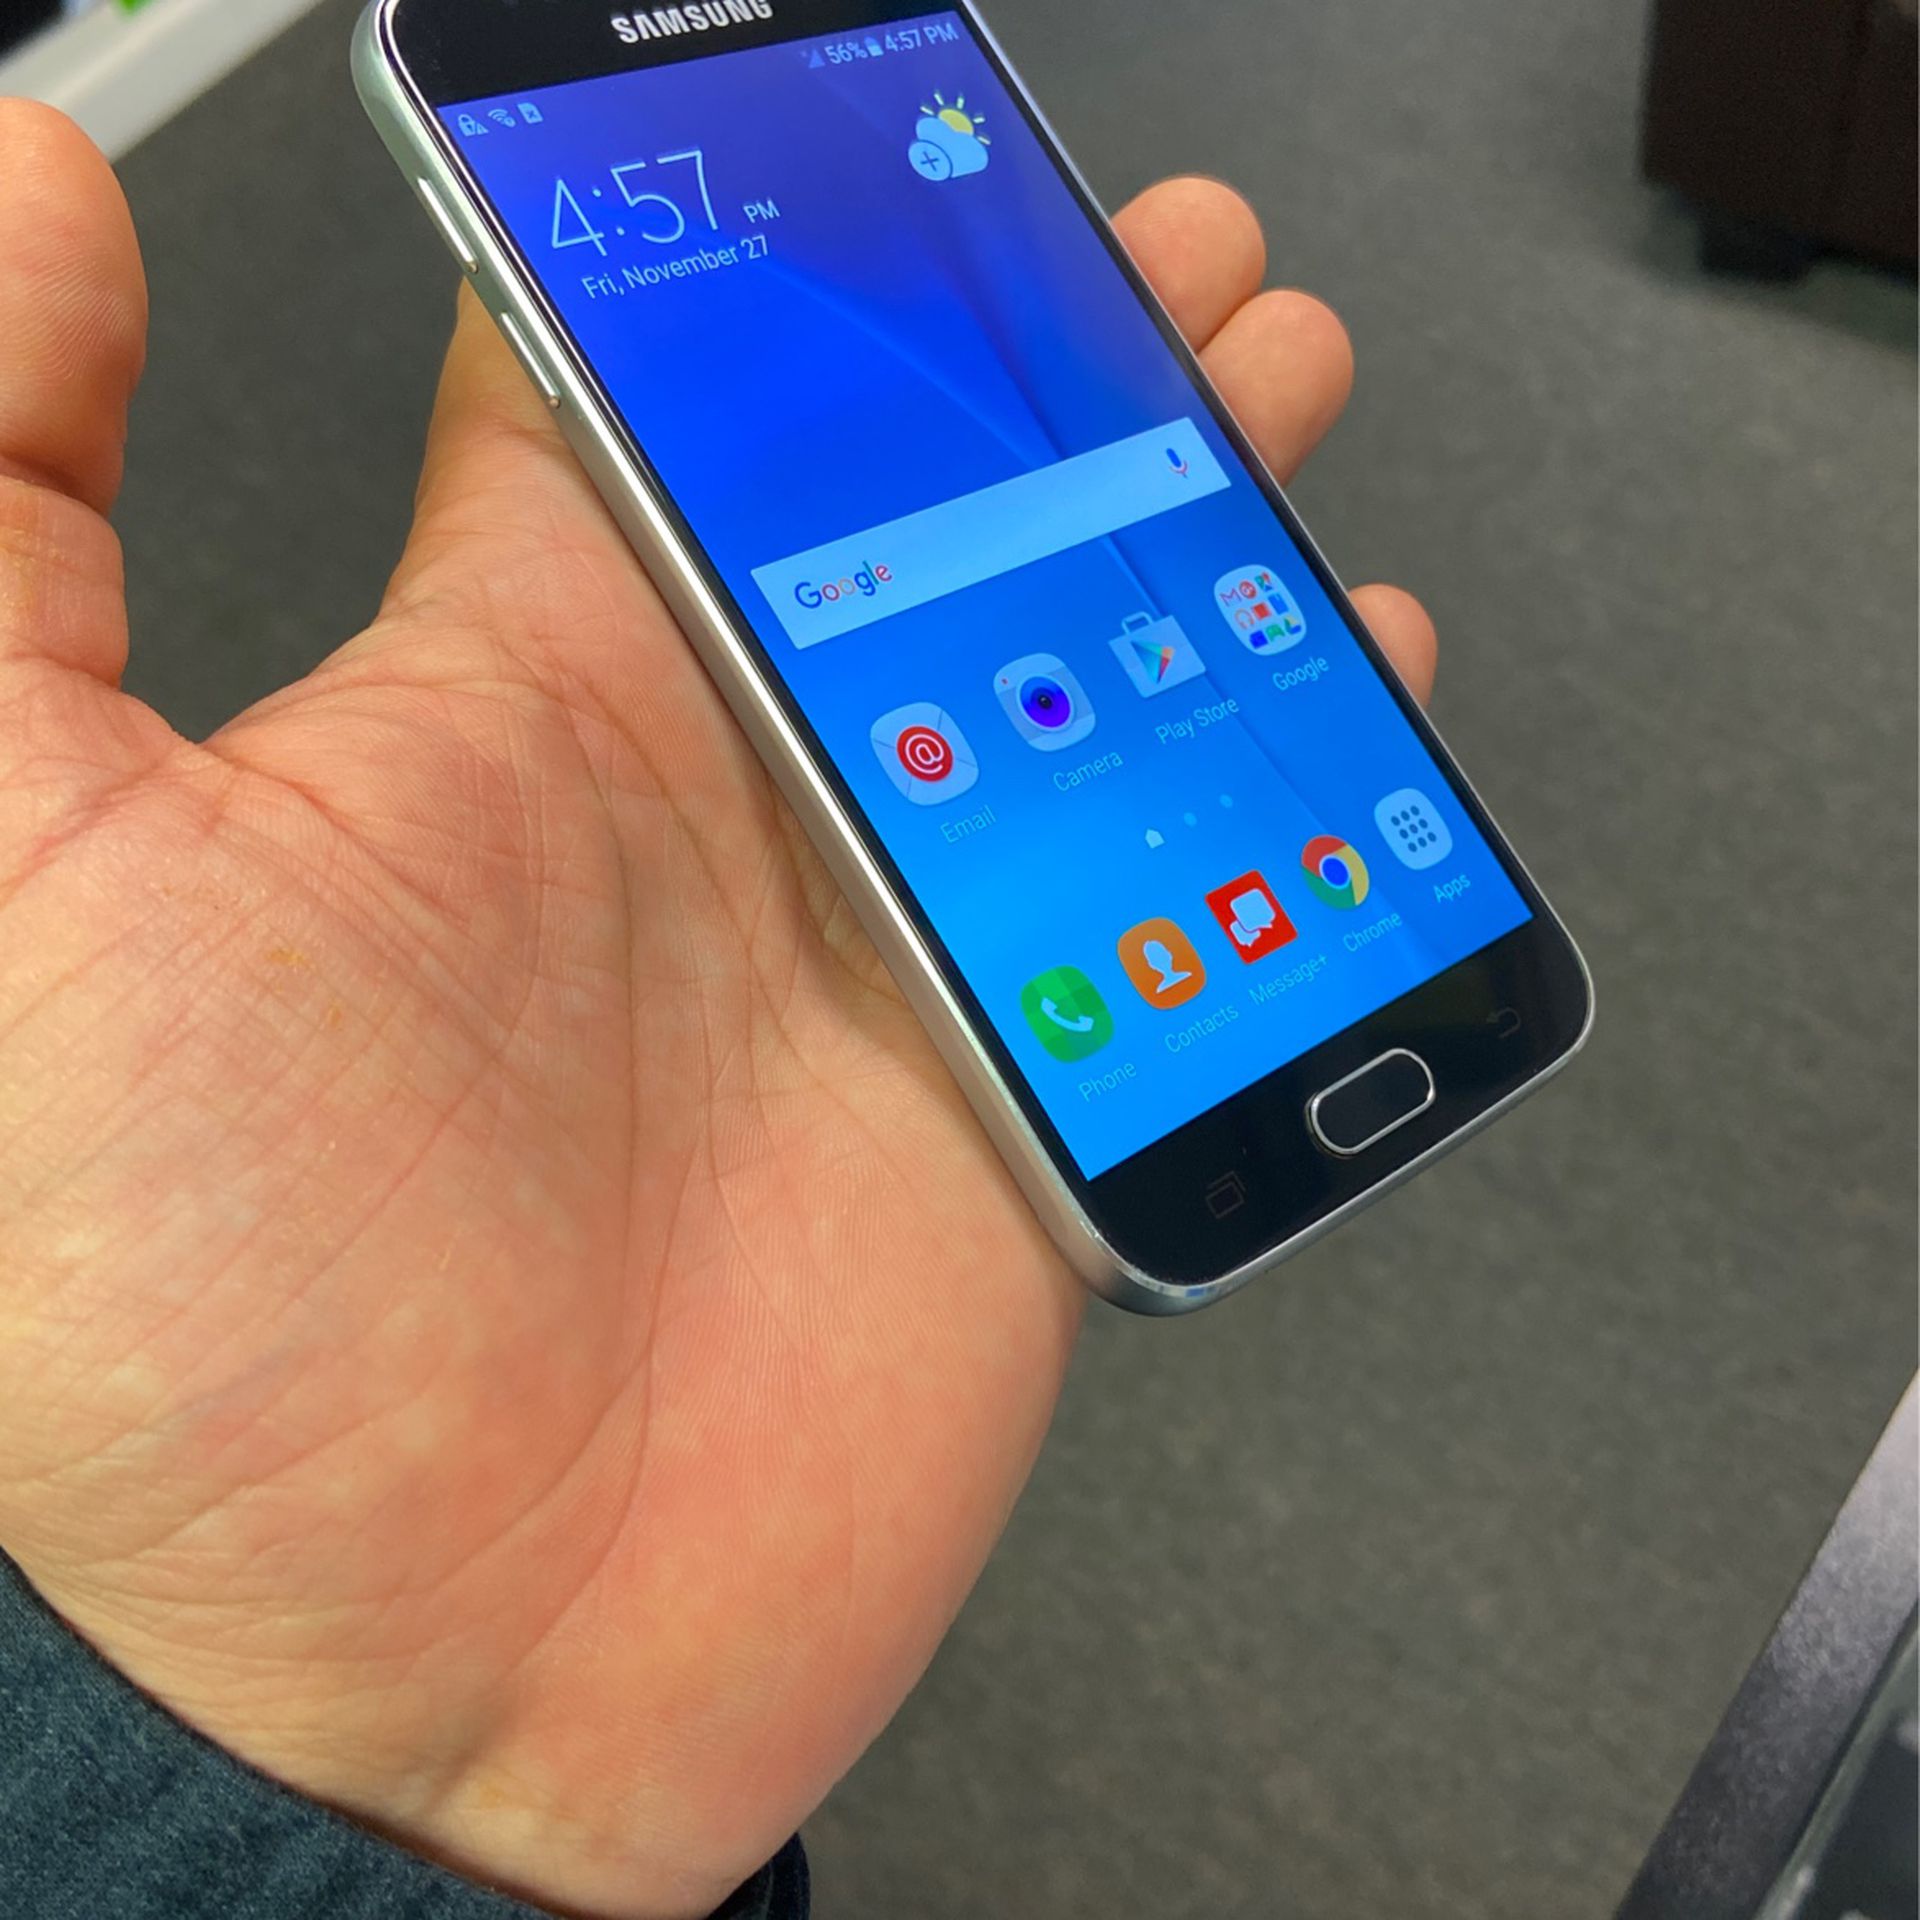 Samsung S6 Unlocked